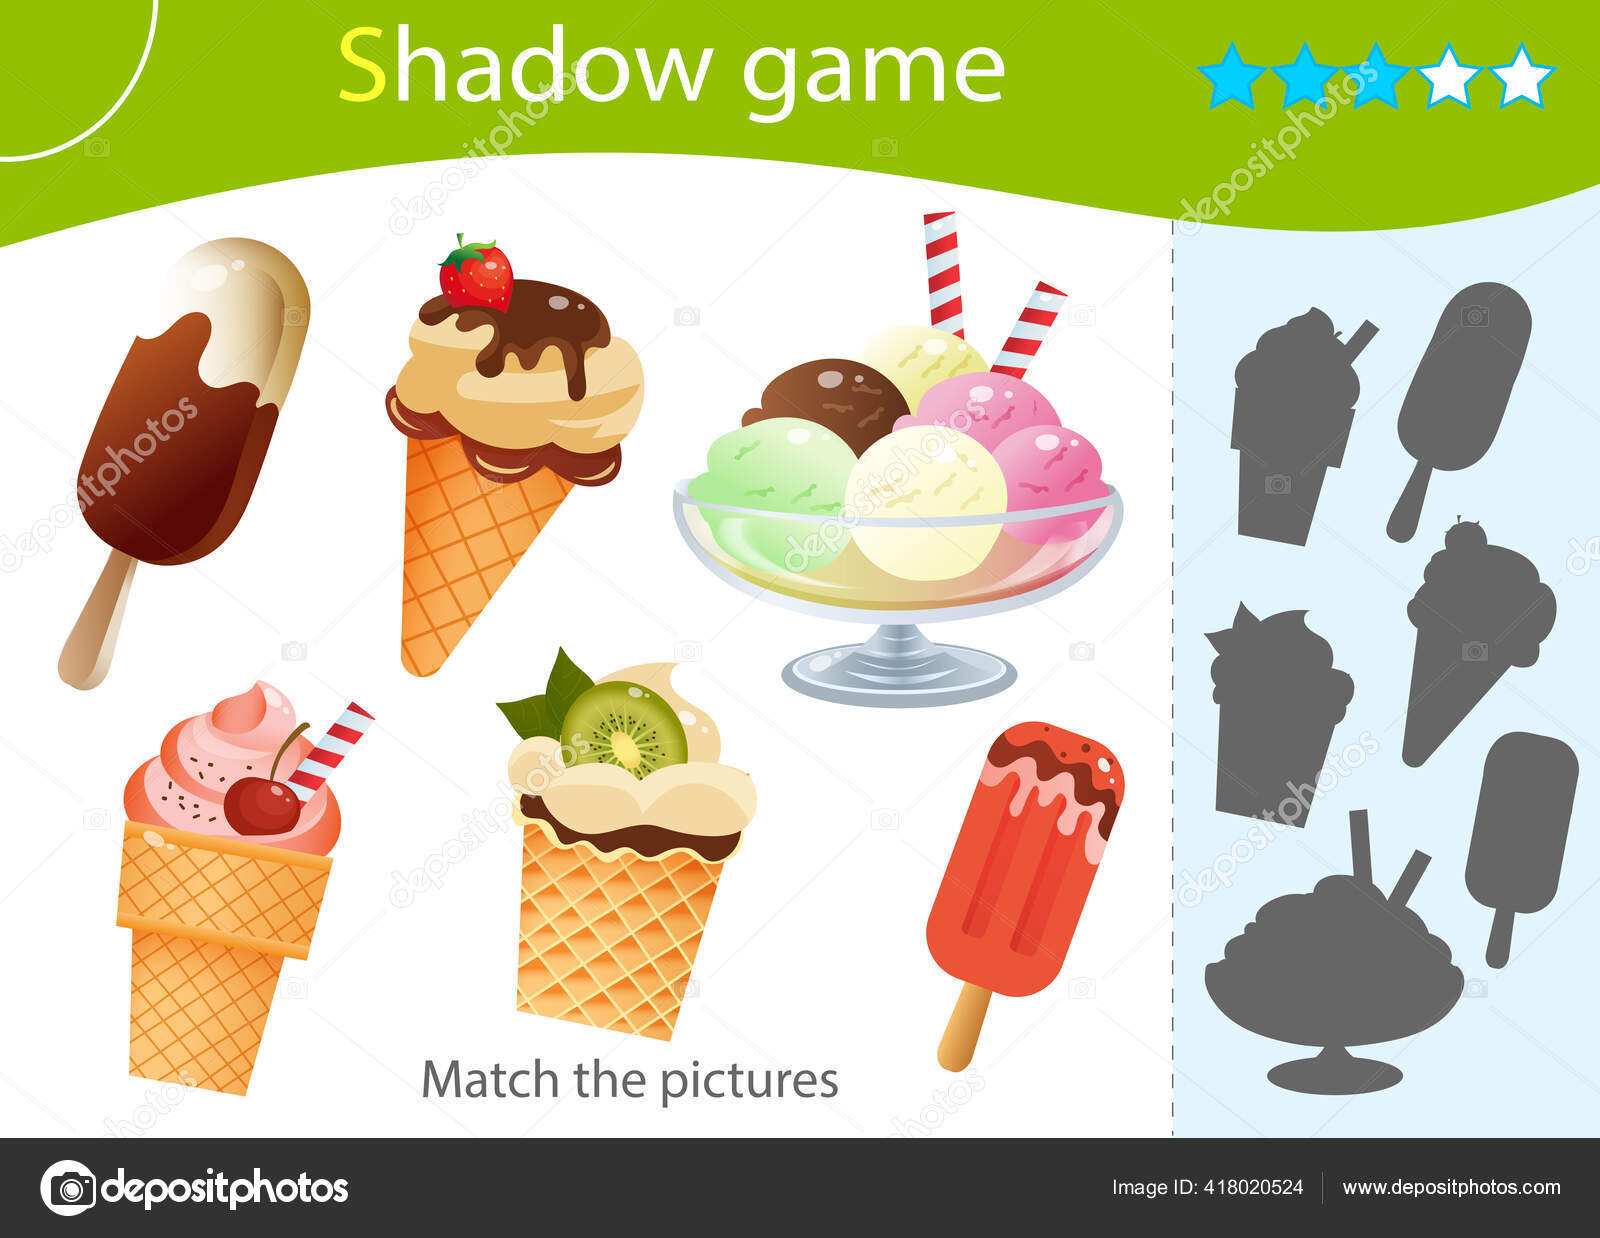 Sorvete com morango encontre a sombra correta jogo de correspondência de  sombra vetor dos desenhos animados